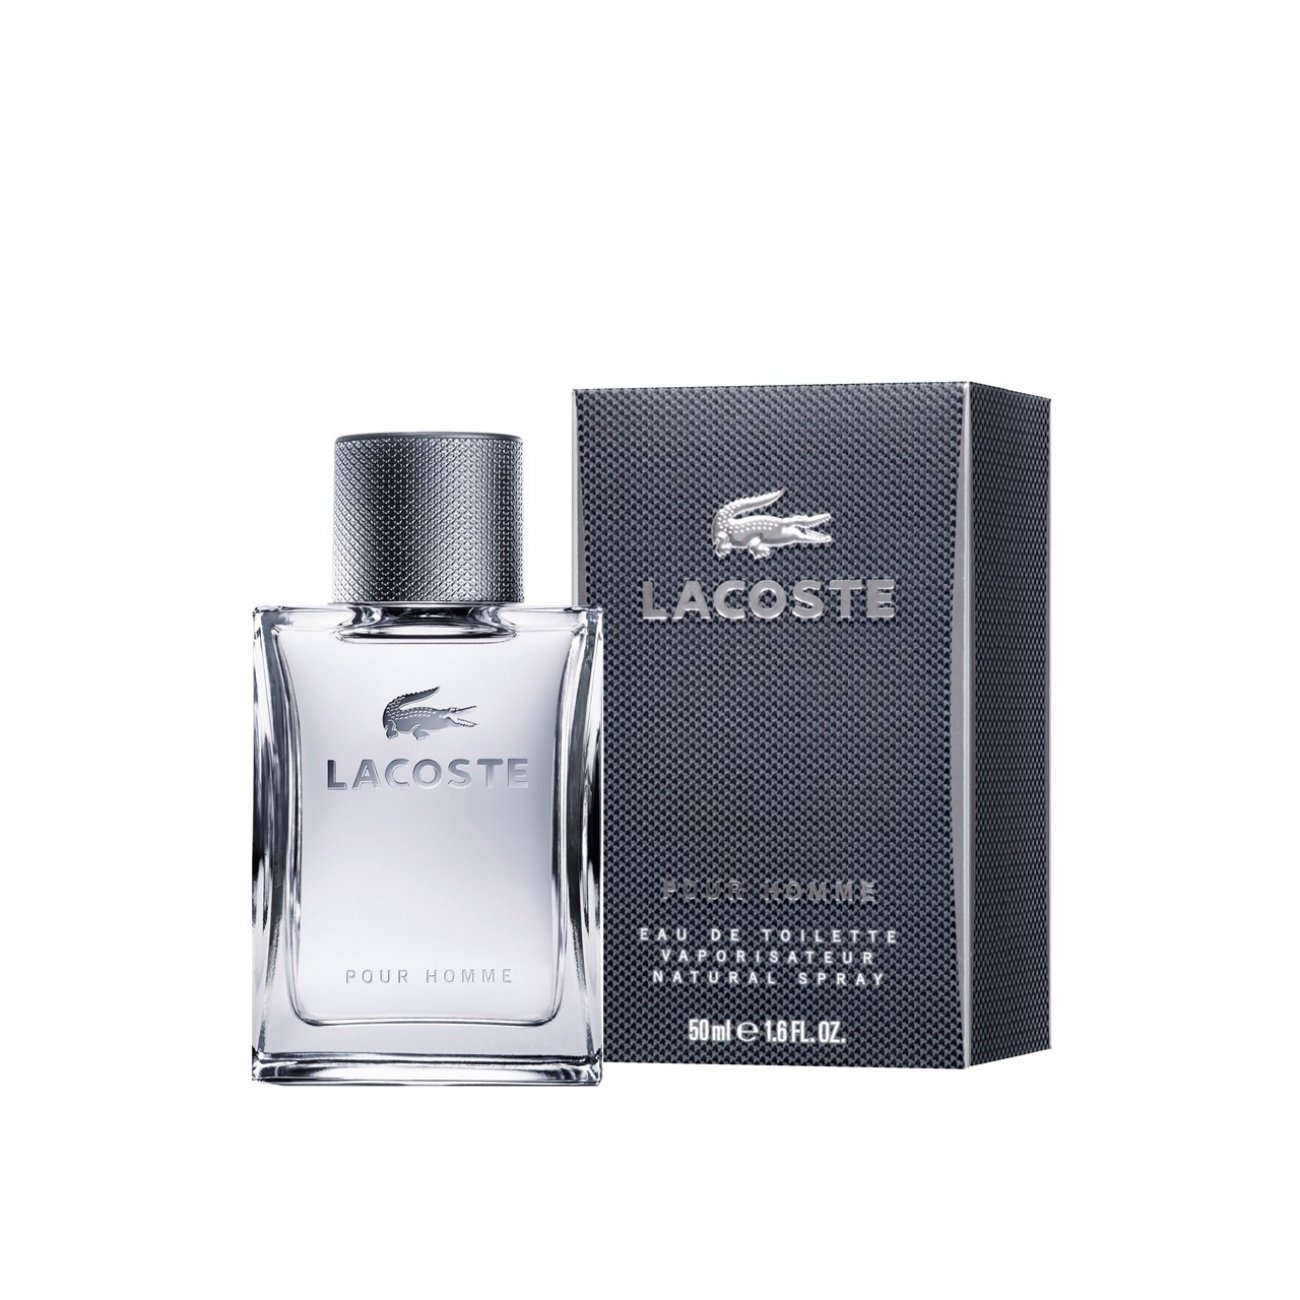 Buy Lacoste Pour Homme de 50ml (1.7fl oz) USA